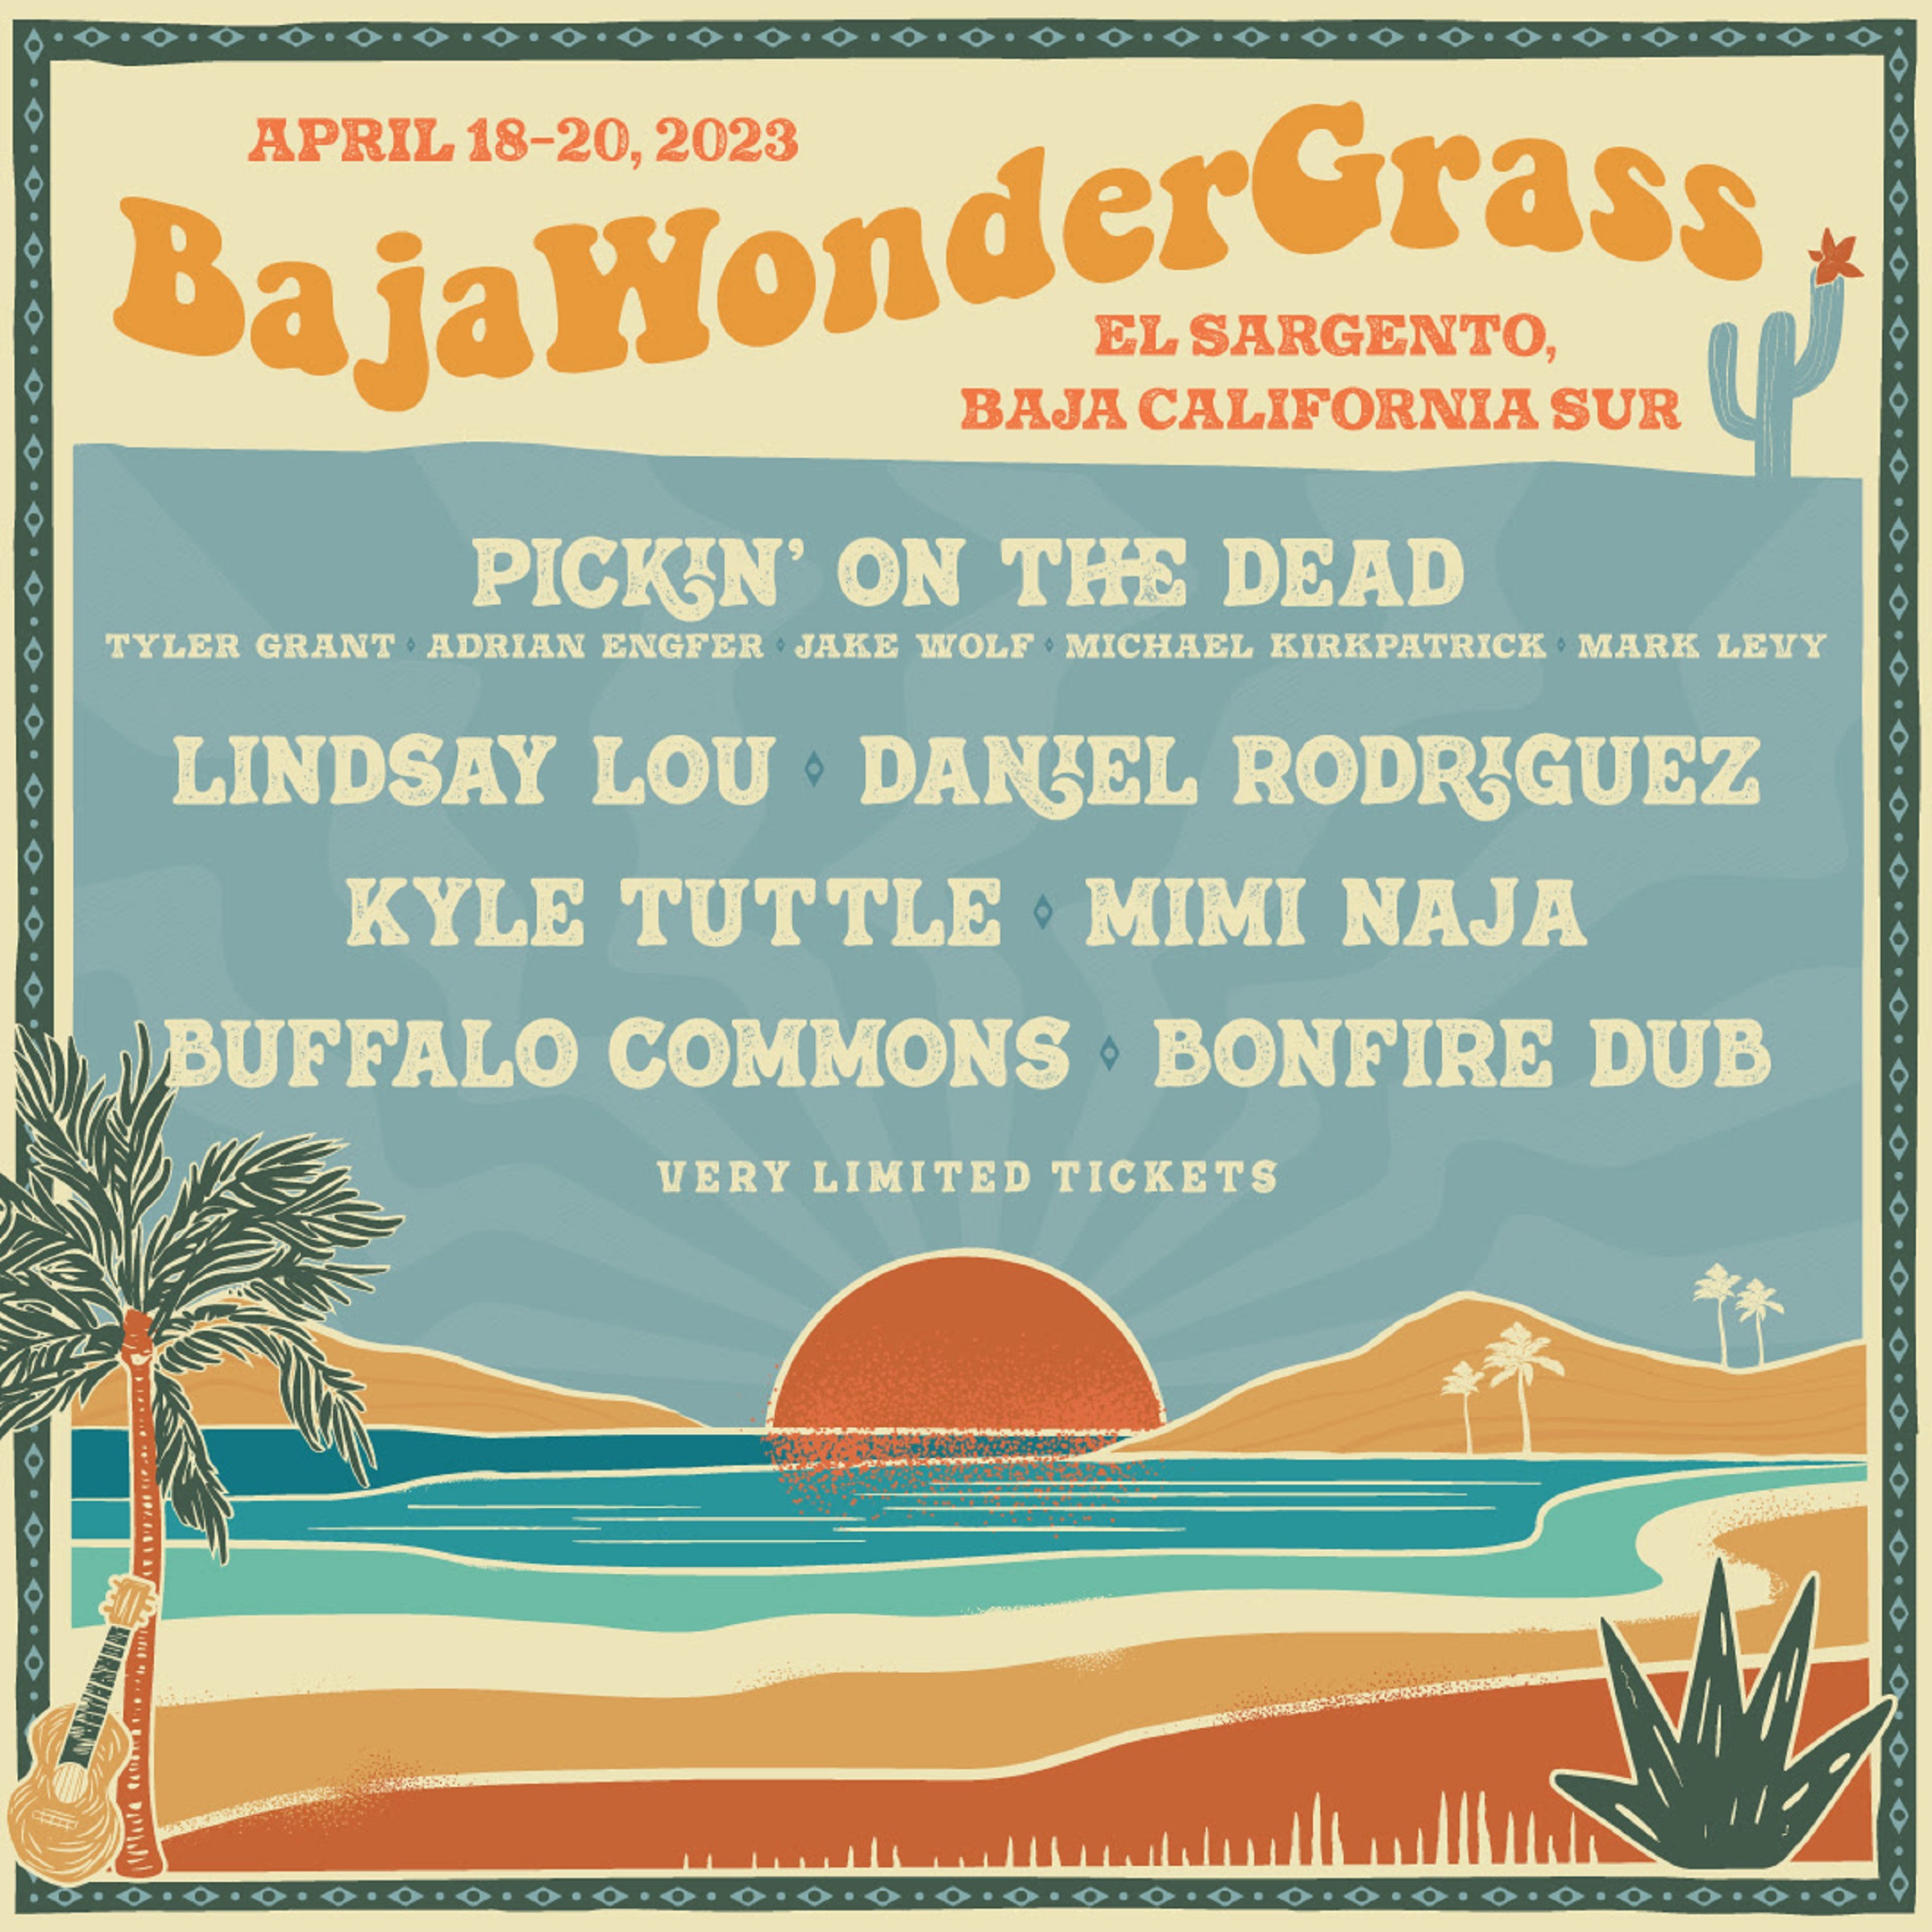 BajaWonderGrass in El Sargento, Baja California Sur, Mexico | 4/18/23 - 4/20/23